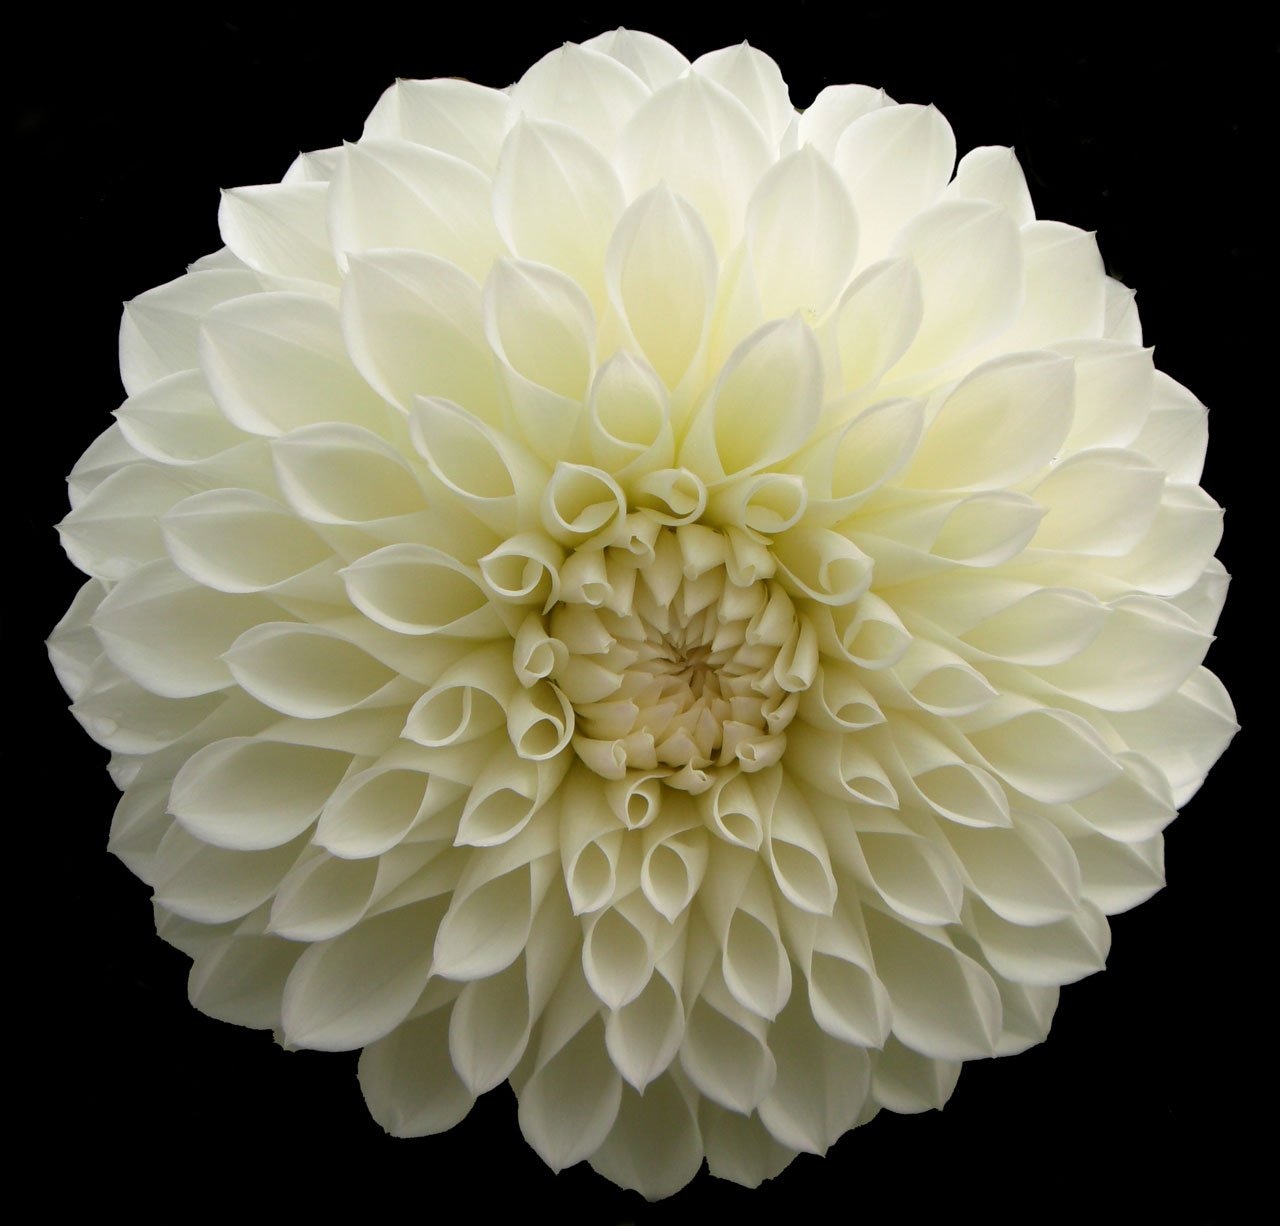 white clustered petaled flower